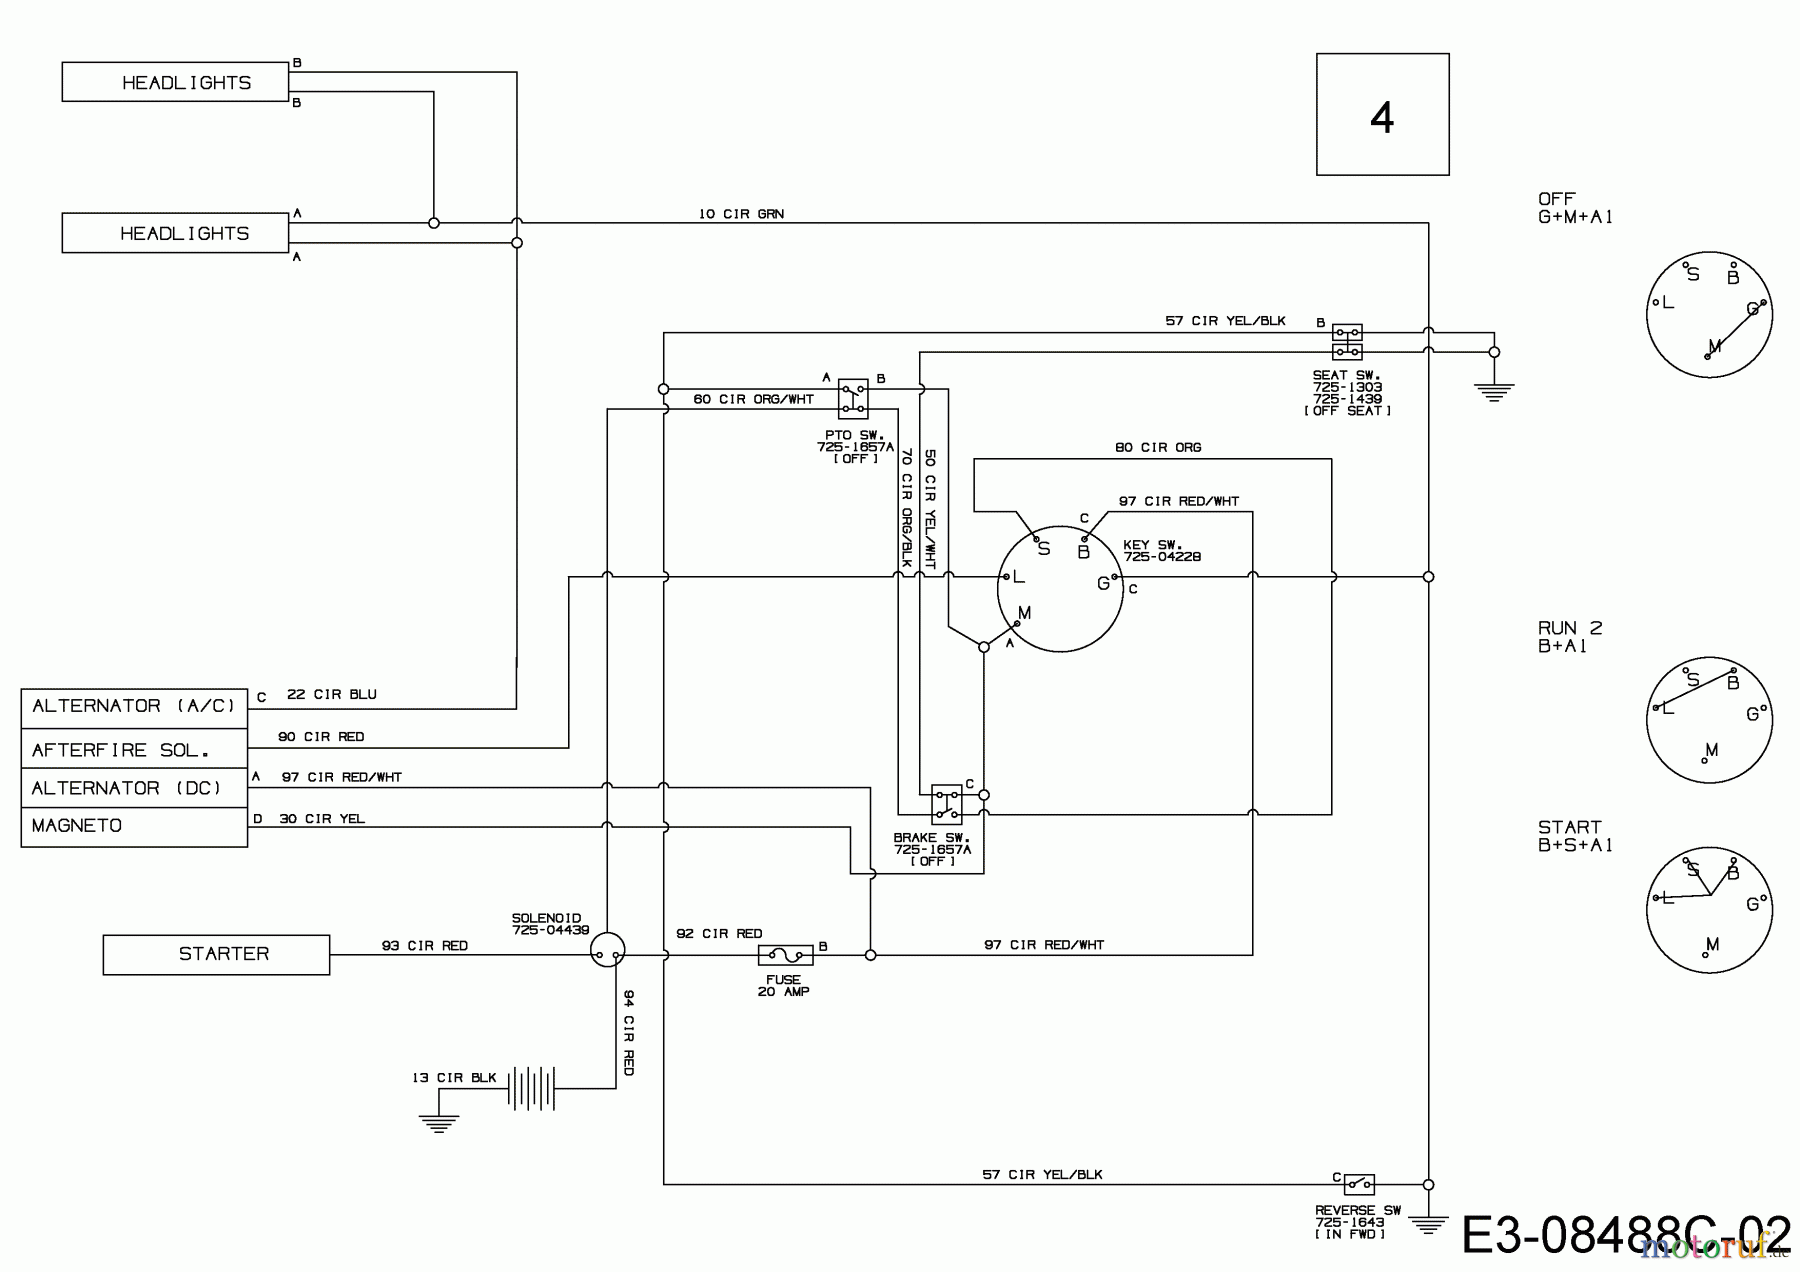  MTD Lawn tractors 547/42 13A877KS308  (2018) Wiring diagram